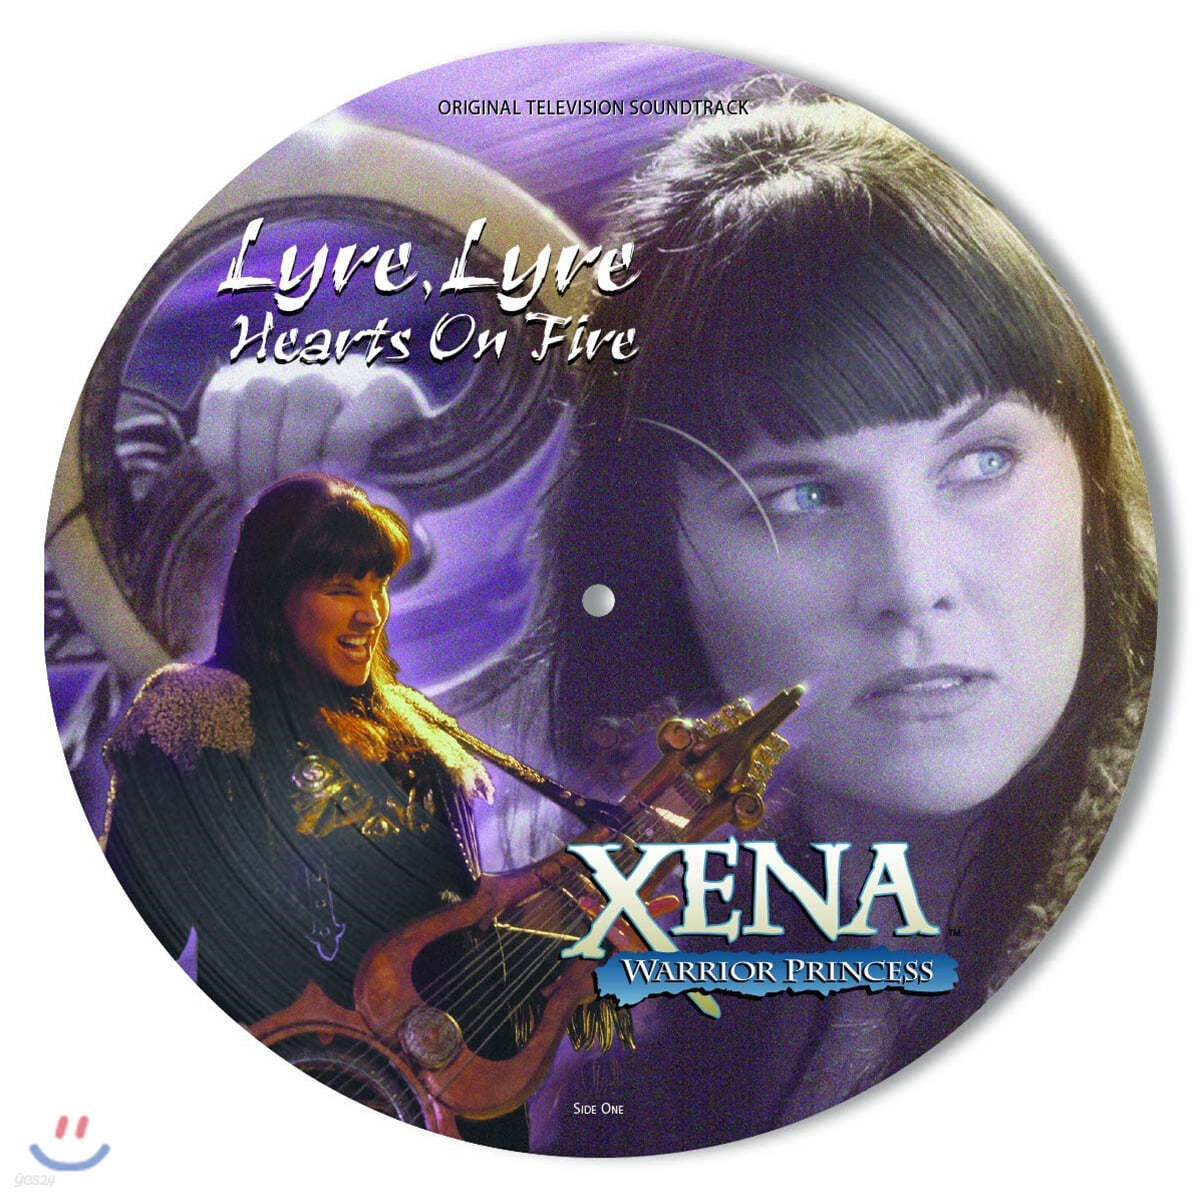 여전사 지나: 라이어, 라이어 하츠 온 파이어 드라마음악 (Xena: Warrior Princess: Lyre, Lyre Hearts On Fire OST) [픽쳐 디스크 LP]